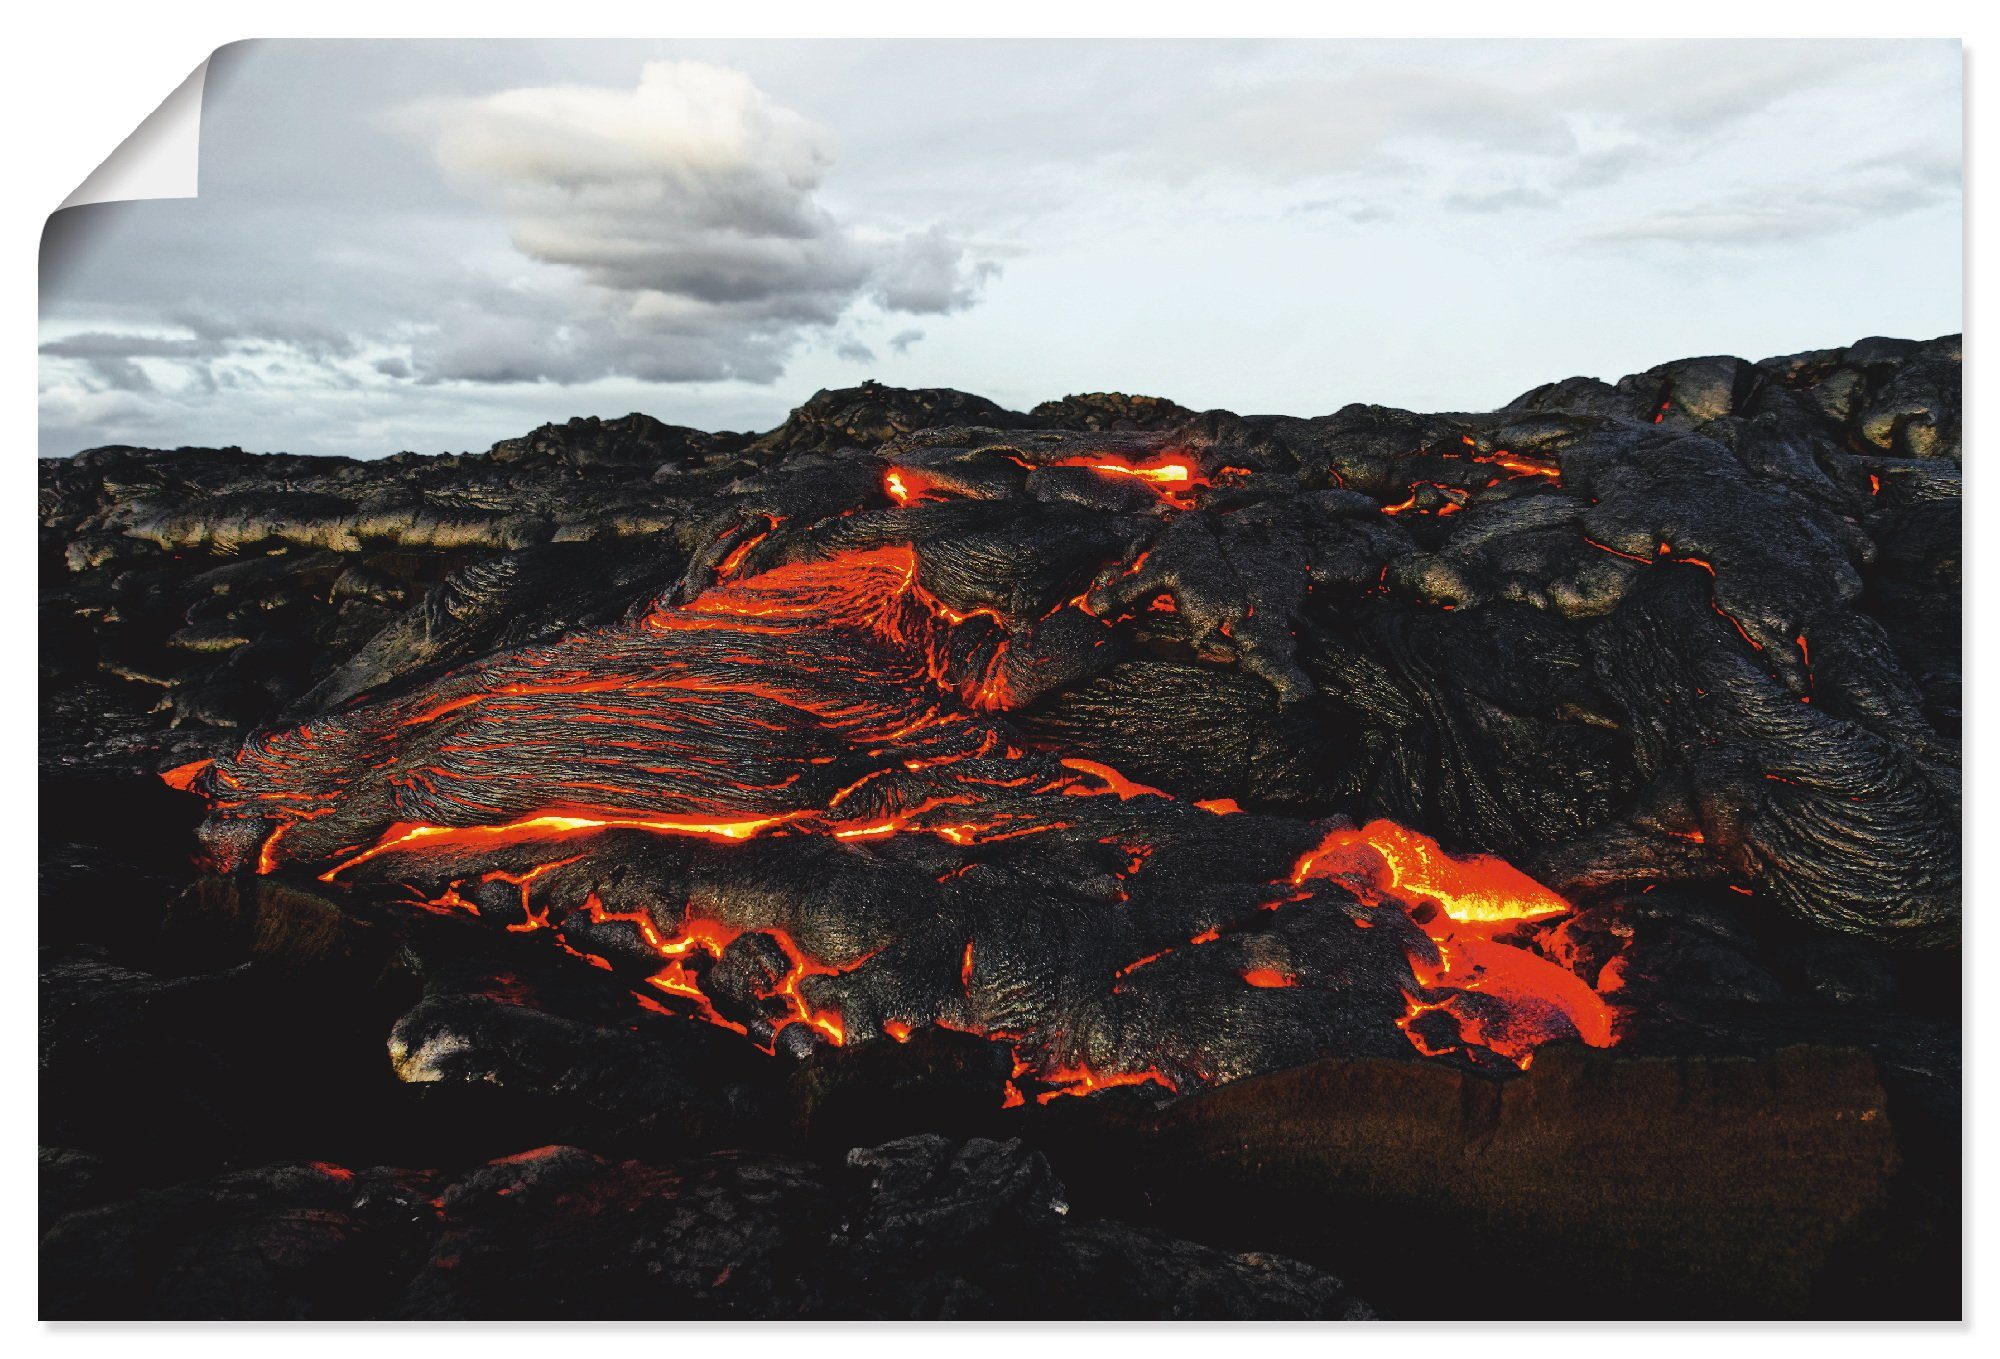 Artland Artprint Hawaï lava komt uit een spleet in de aarde in vele afmetingen & productsoorten - artprint van aluminium / artprint voor buiten, artprint op linnen, poster, muursti